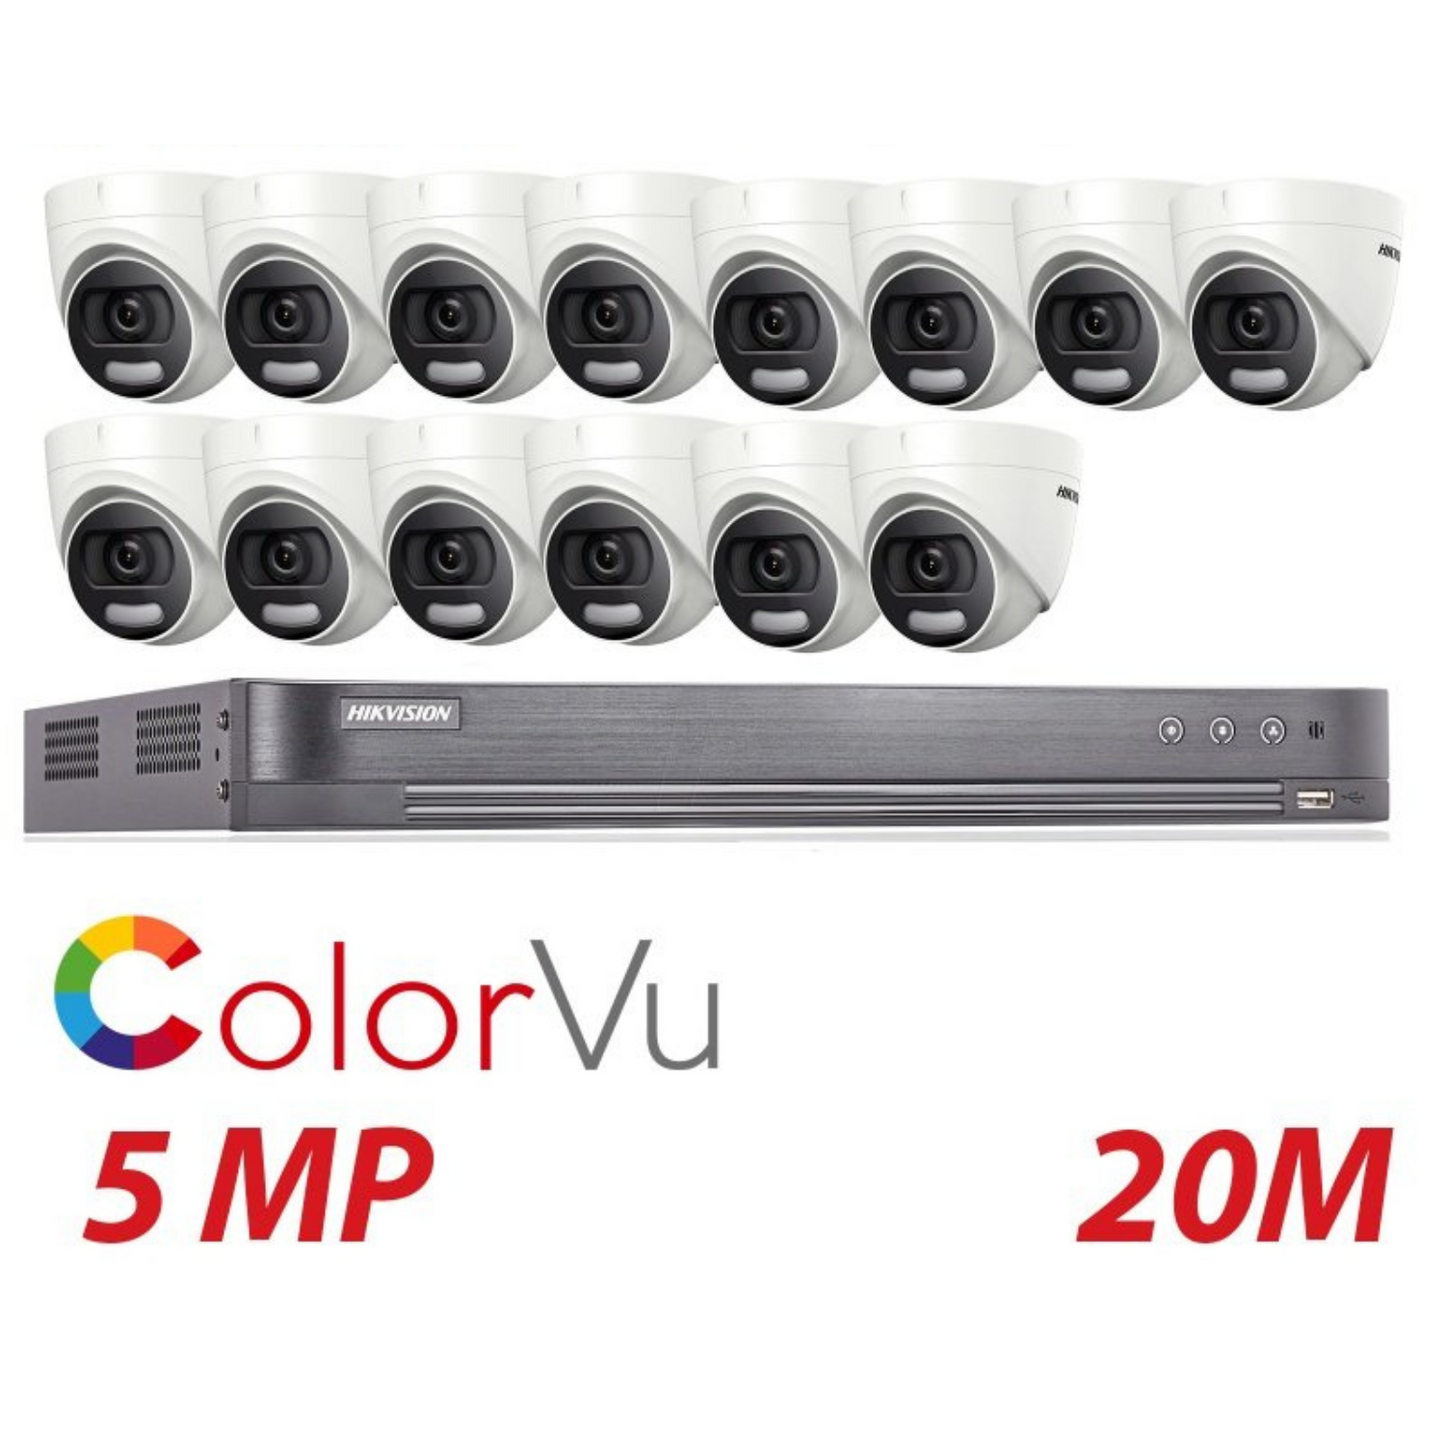 Hikvision CCTV kit, 14 x 5mp Colorvu Acusense cameras, 1 x 16 Channel DVR